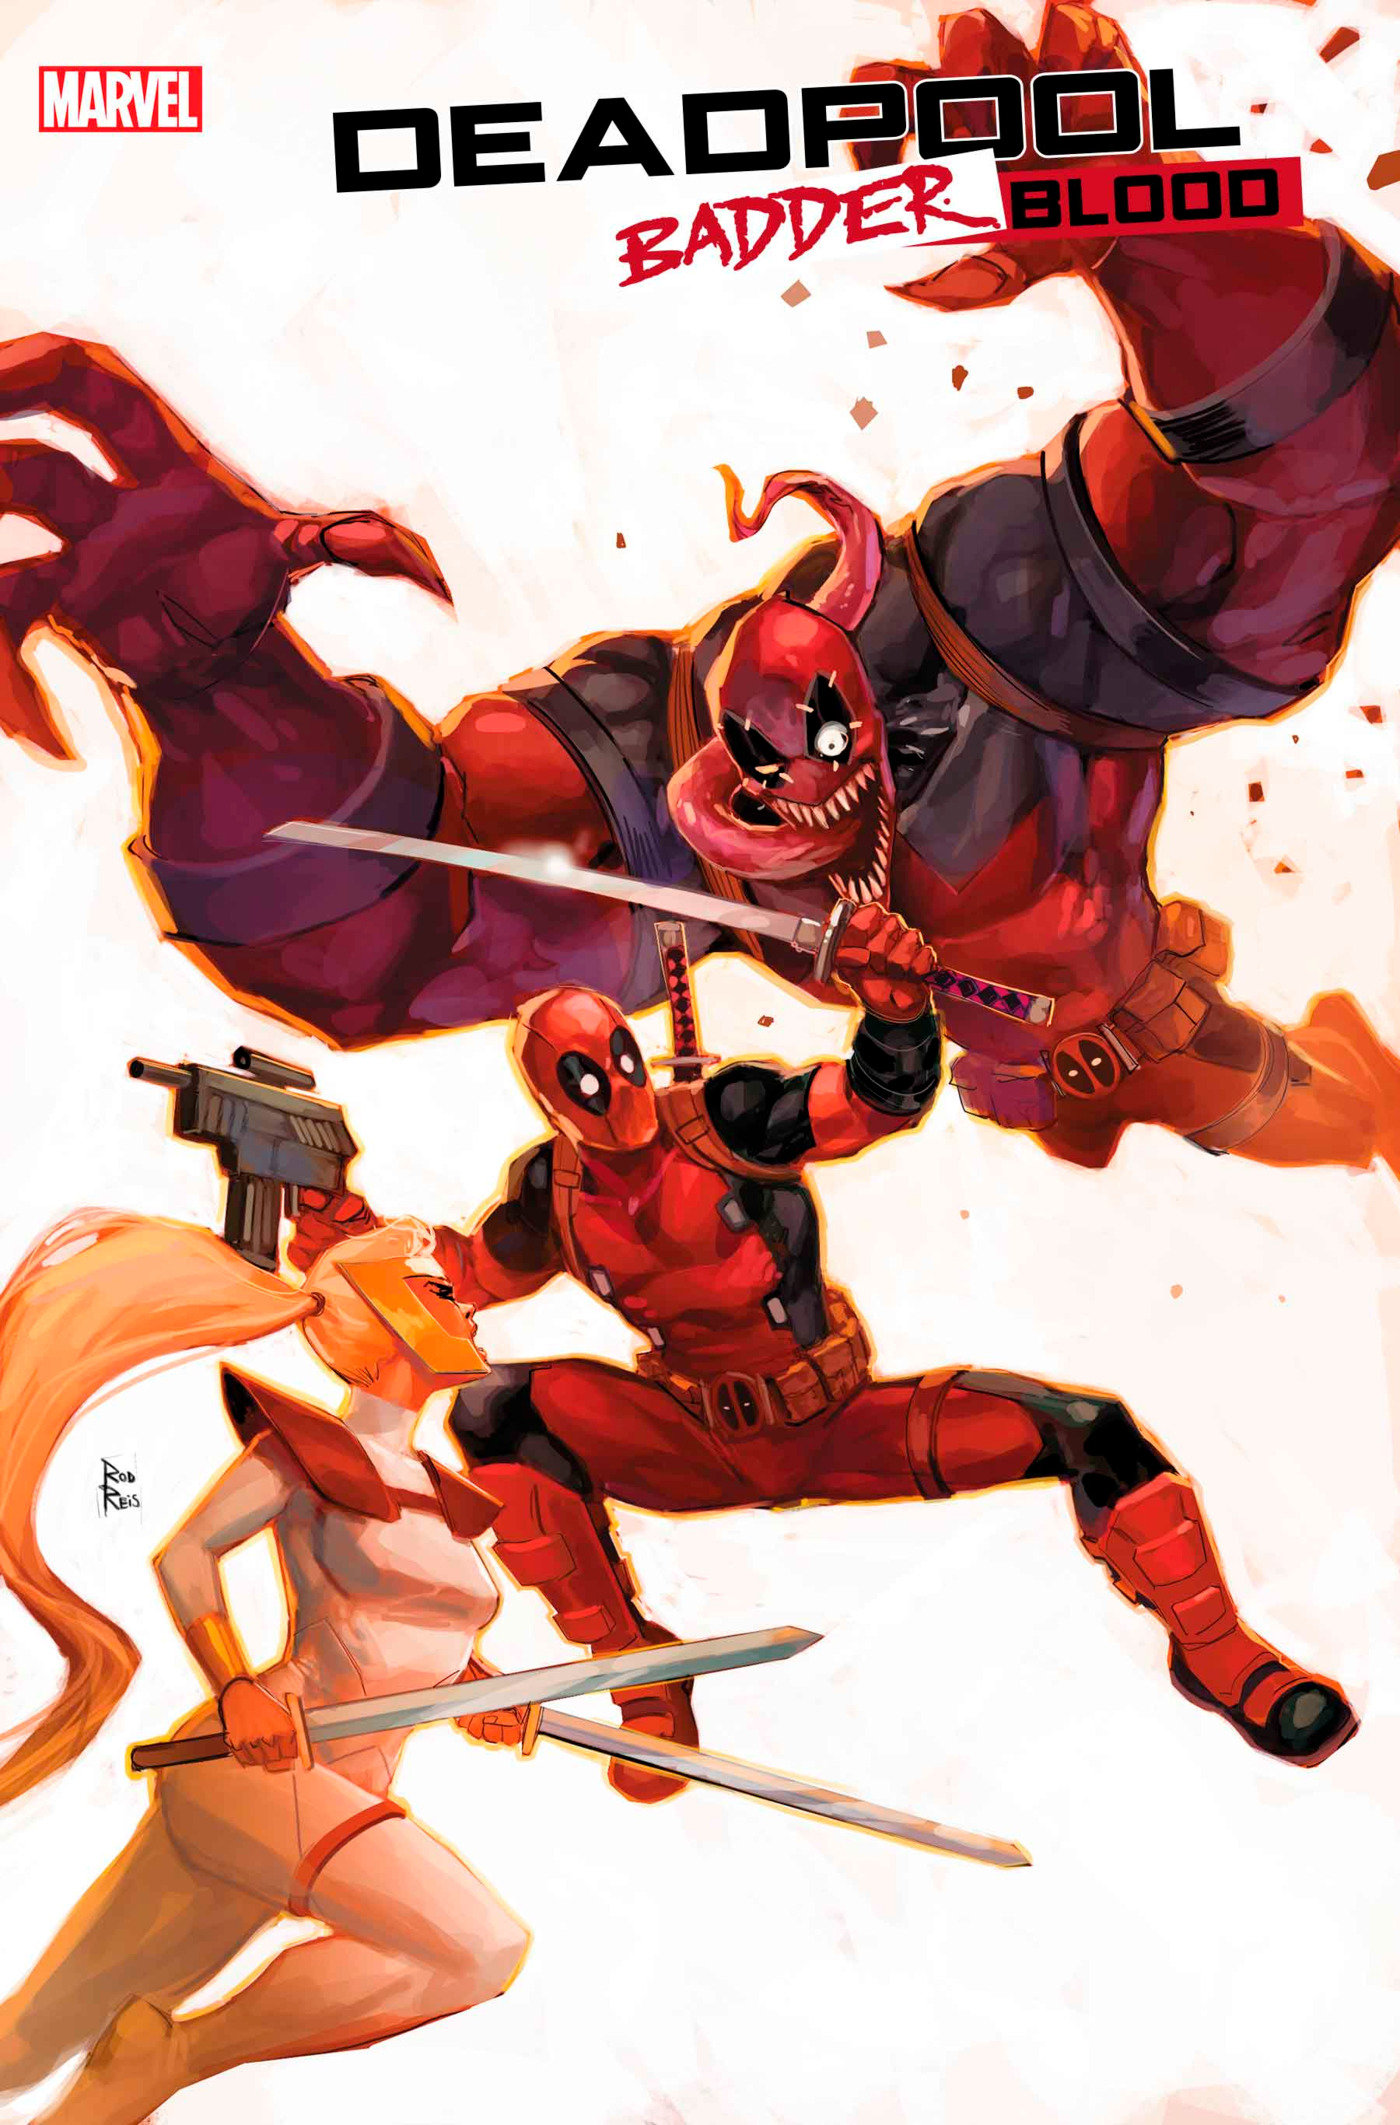 Deadpool: Badder Blood #3 Rod Reis Variant